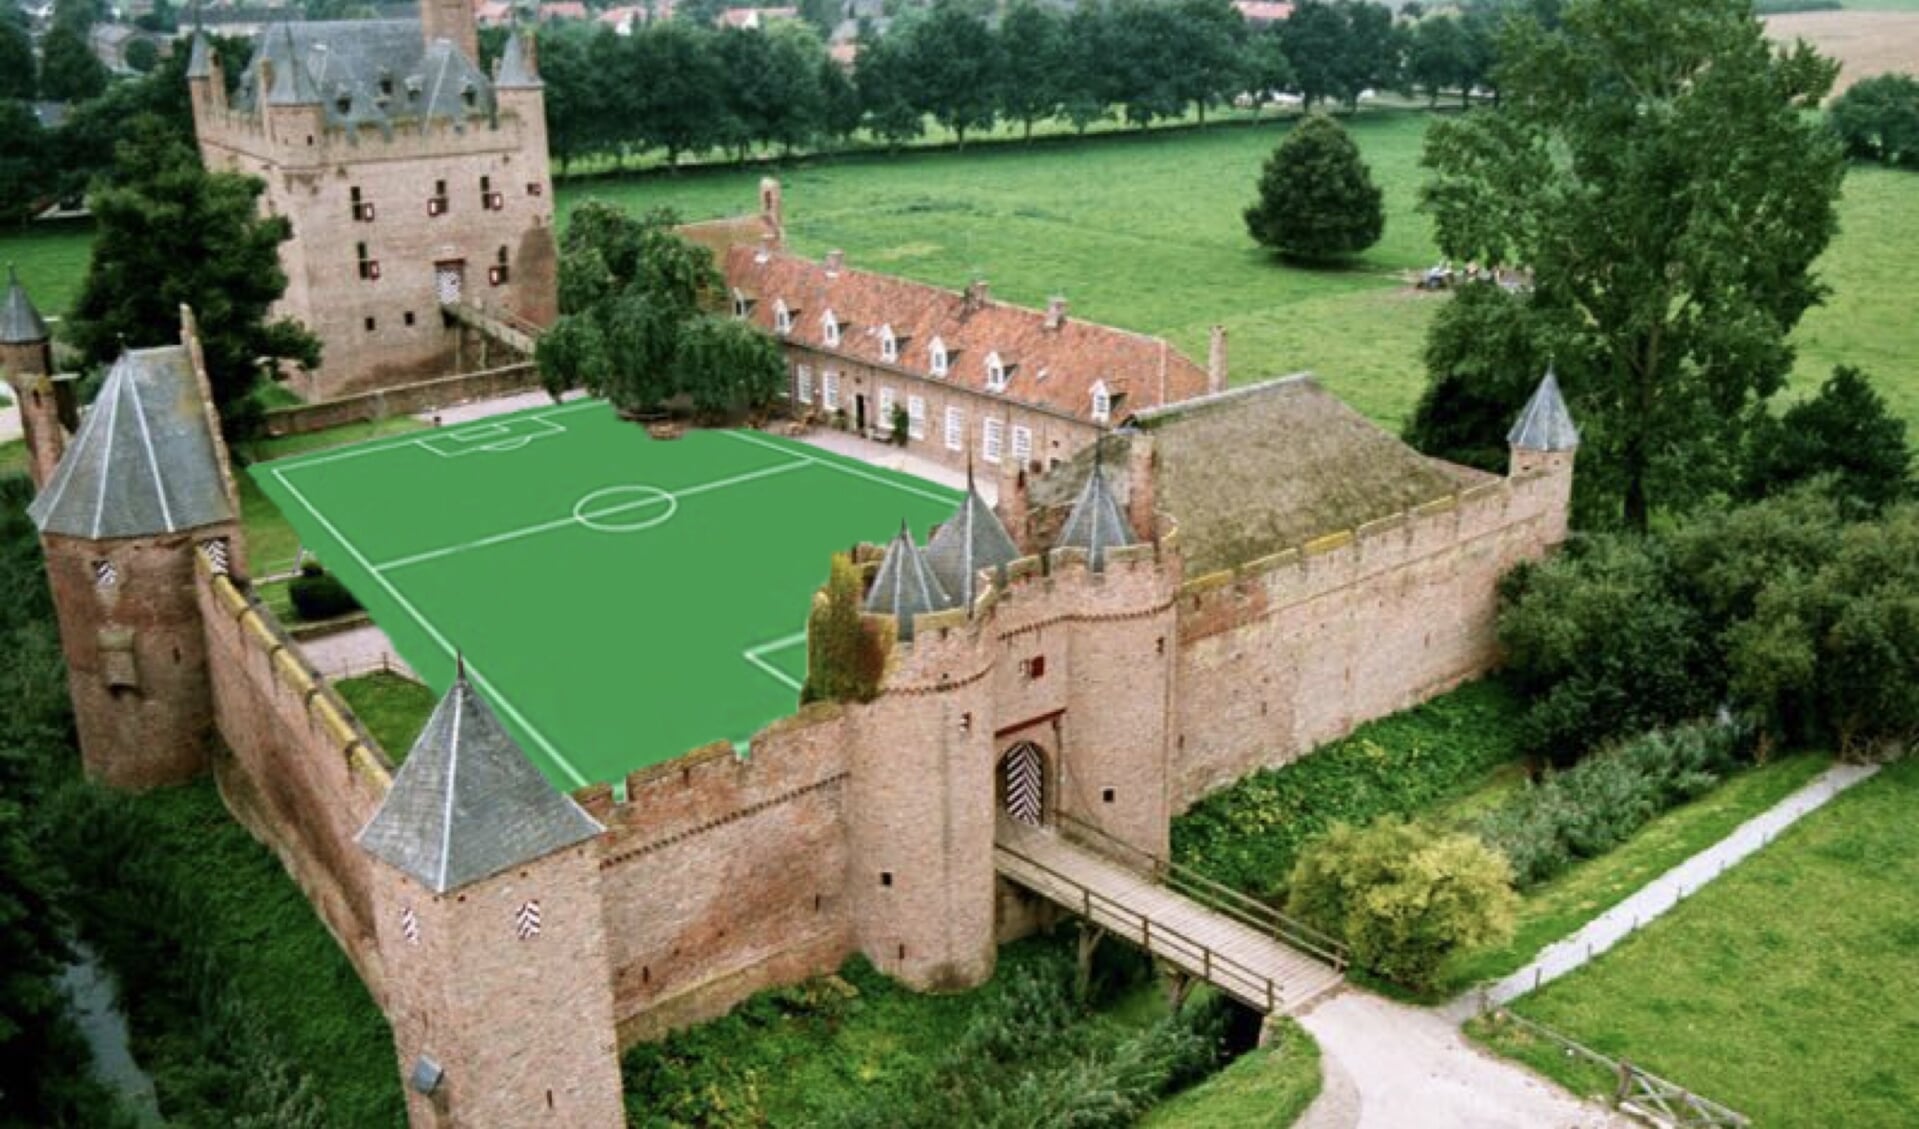 Voetbal in de middeleeuwen? (foto: Wilko Brom)